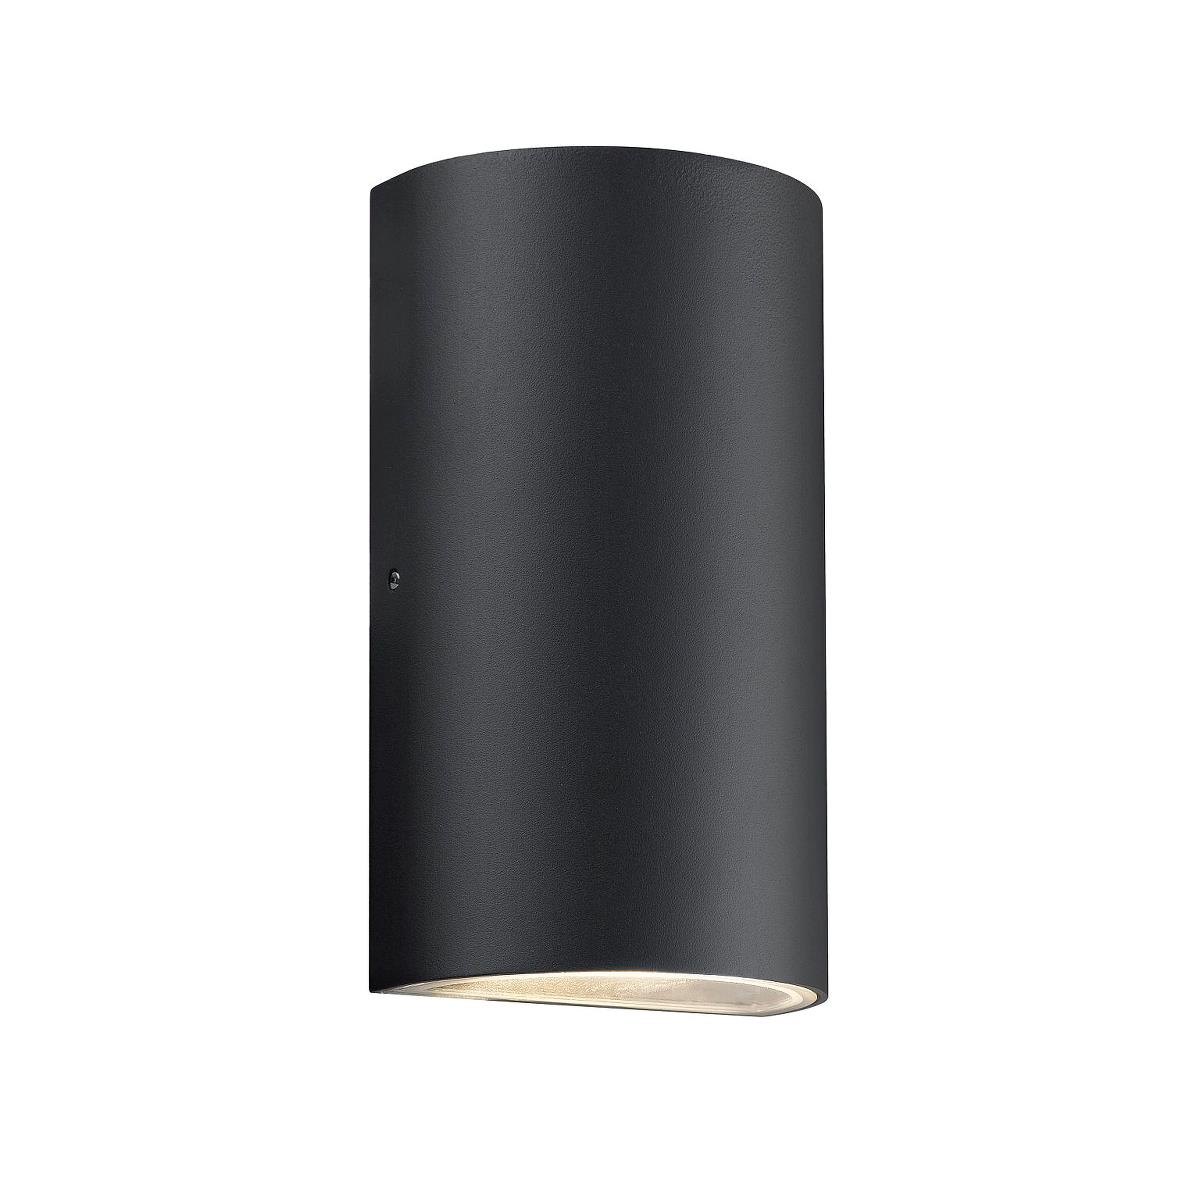 Nordlux Rold halbrund Wandleuchte Aussen LED 2x 375lm schwarz